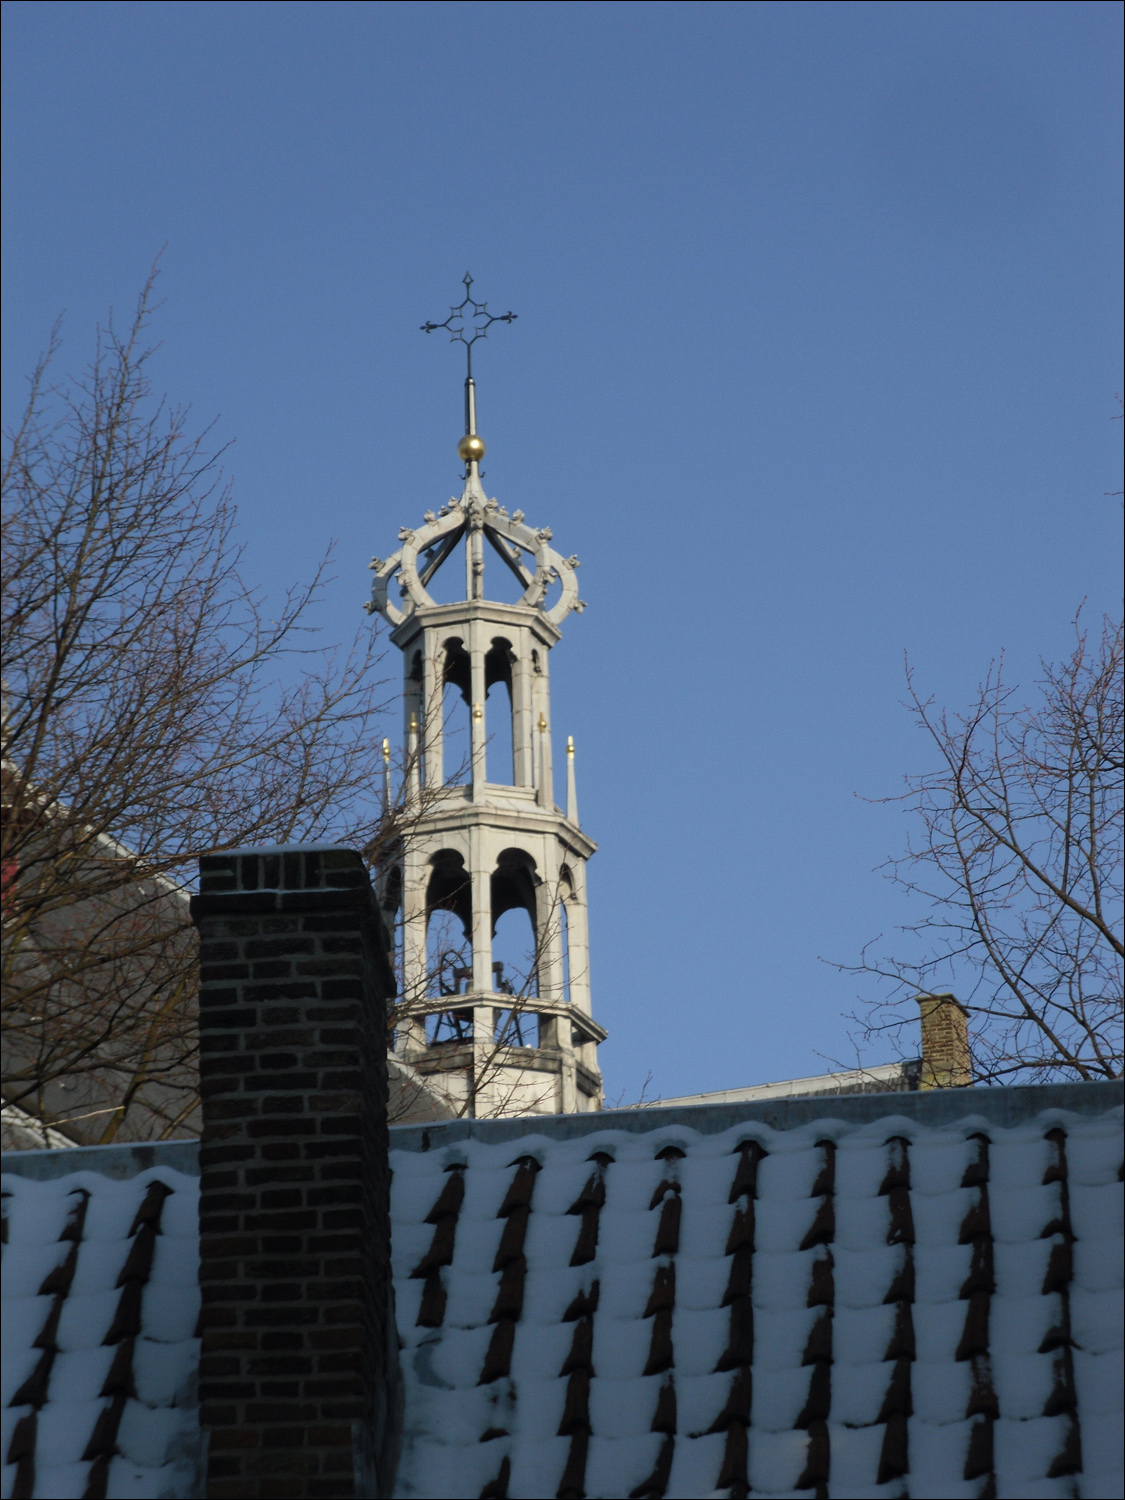 Oude Kerk steeple from Prinsenhof